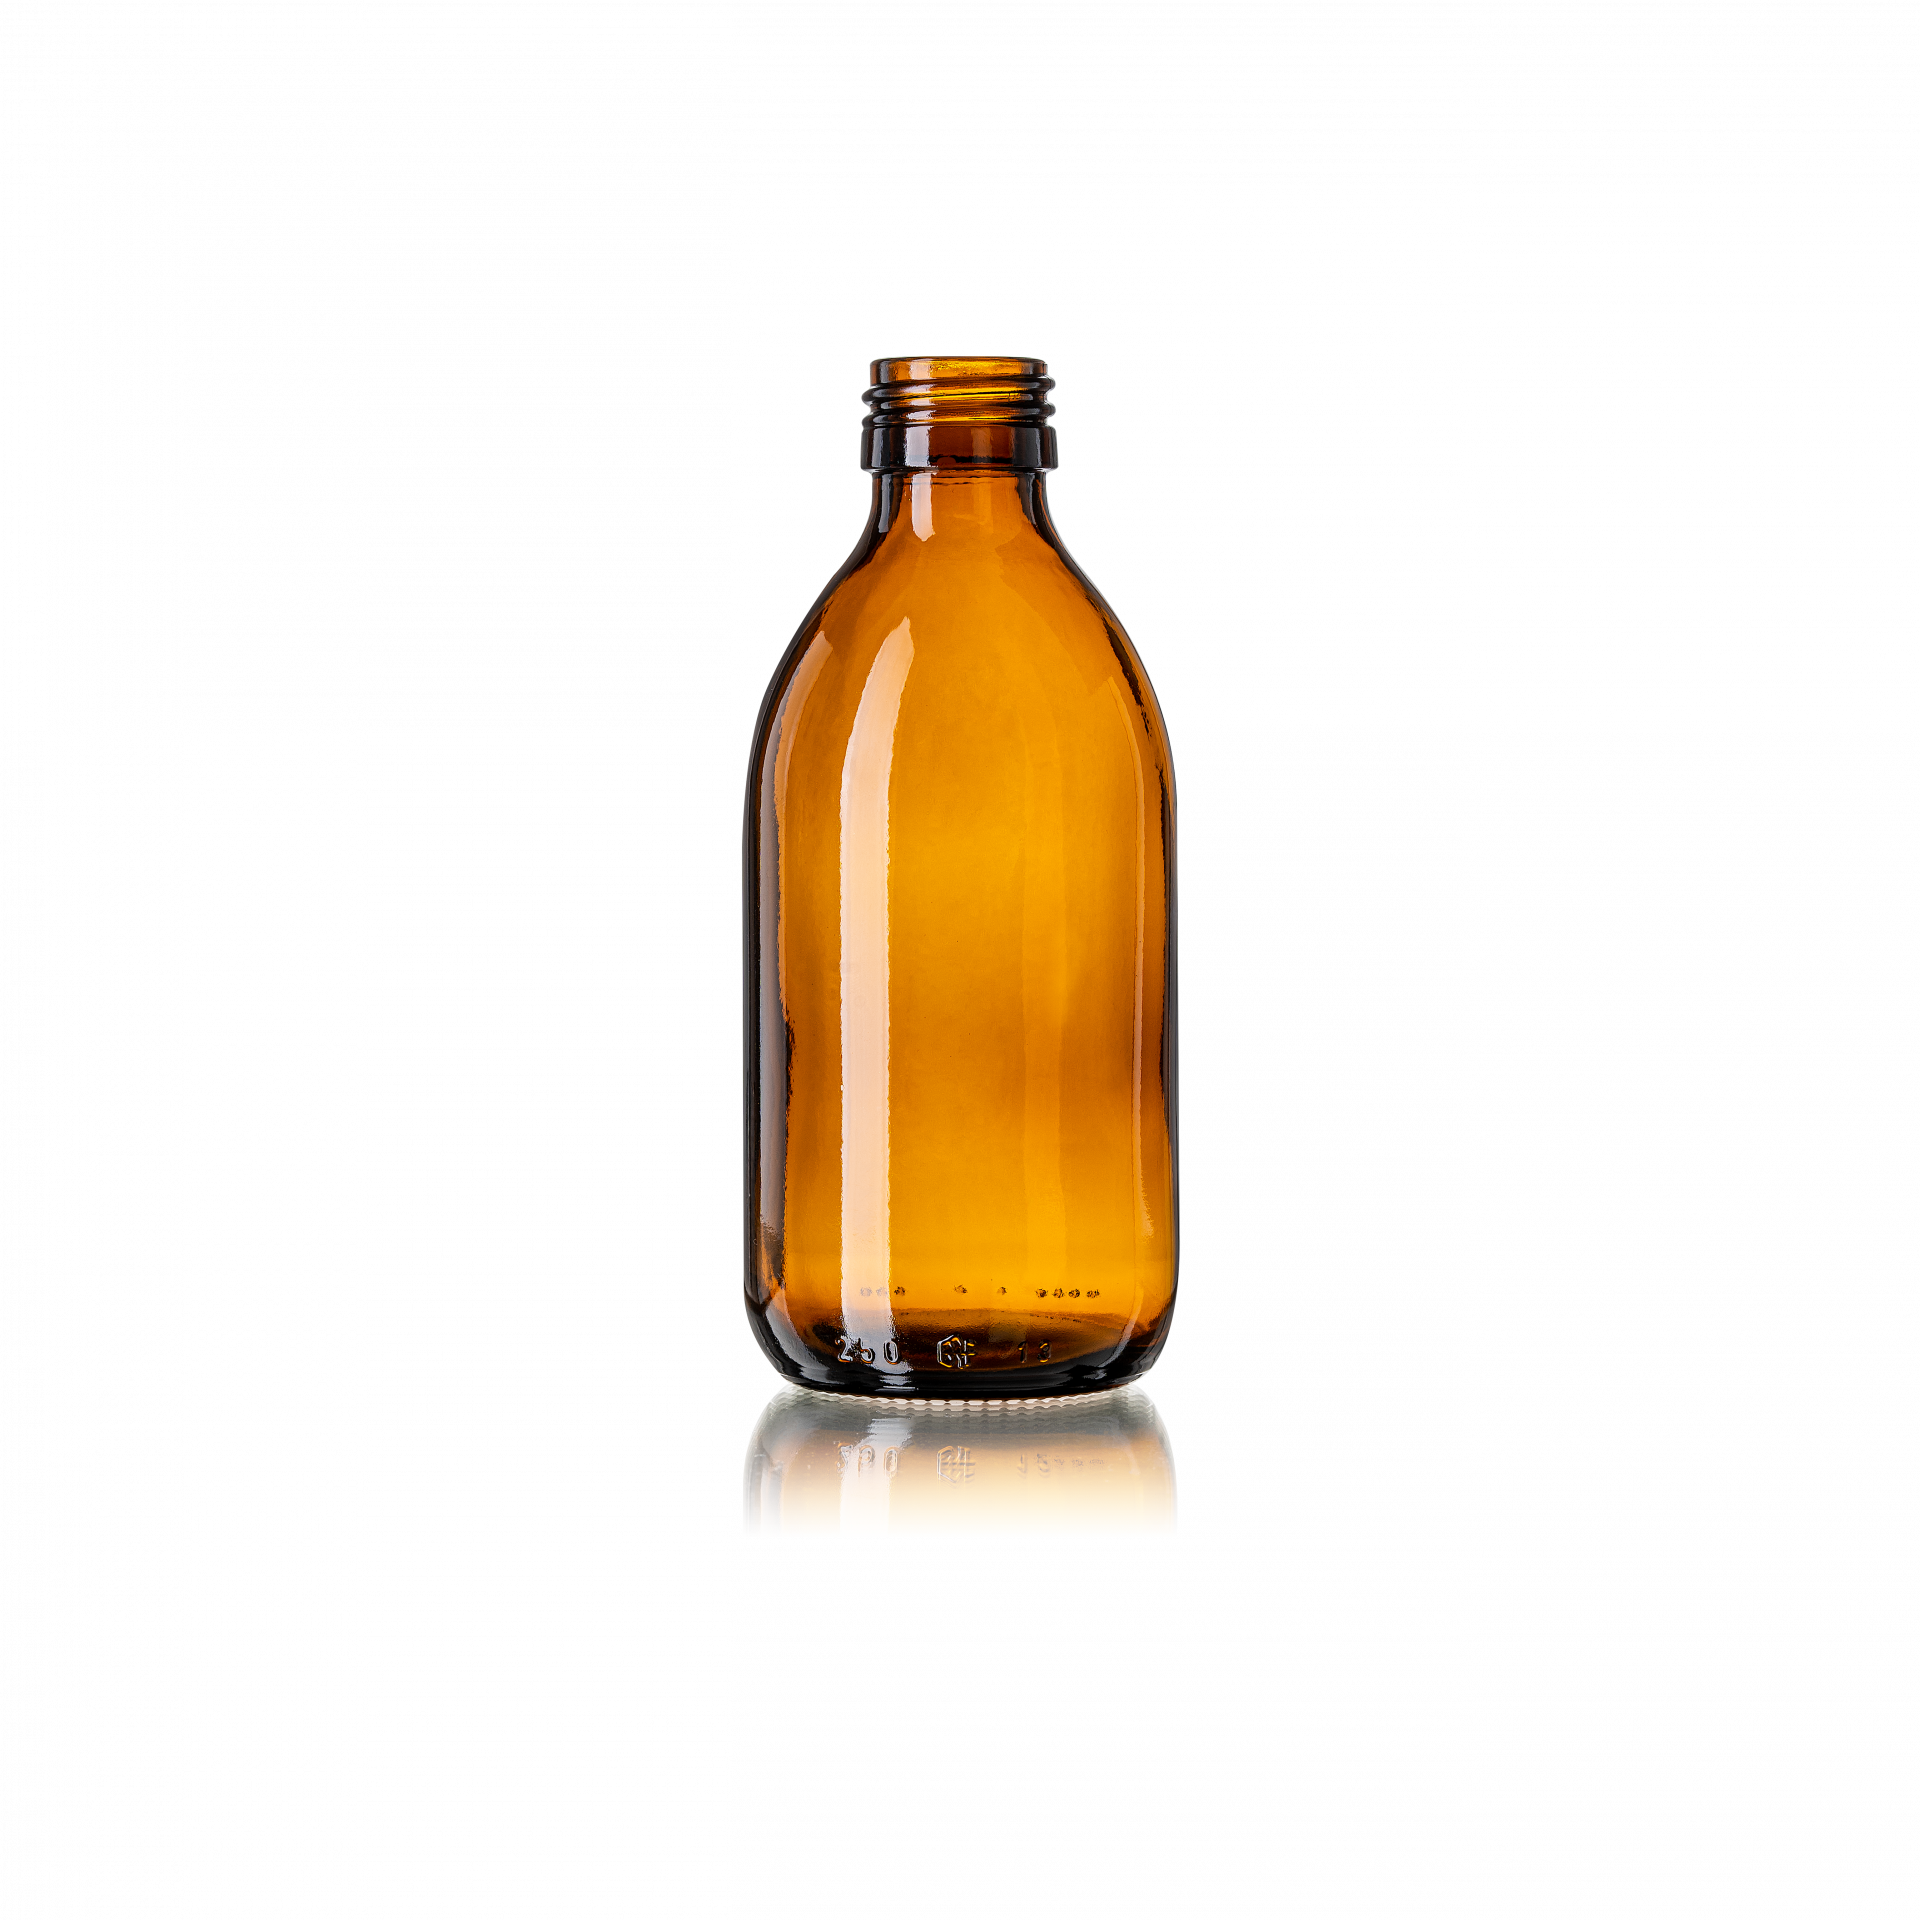 Calaso Sirupflasche Thyme 250 ml, PP28, Amber - Perfekt für Sirupe und Flüssigkeiten